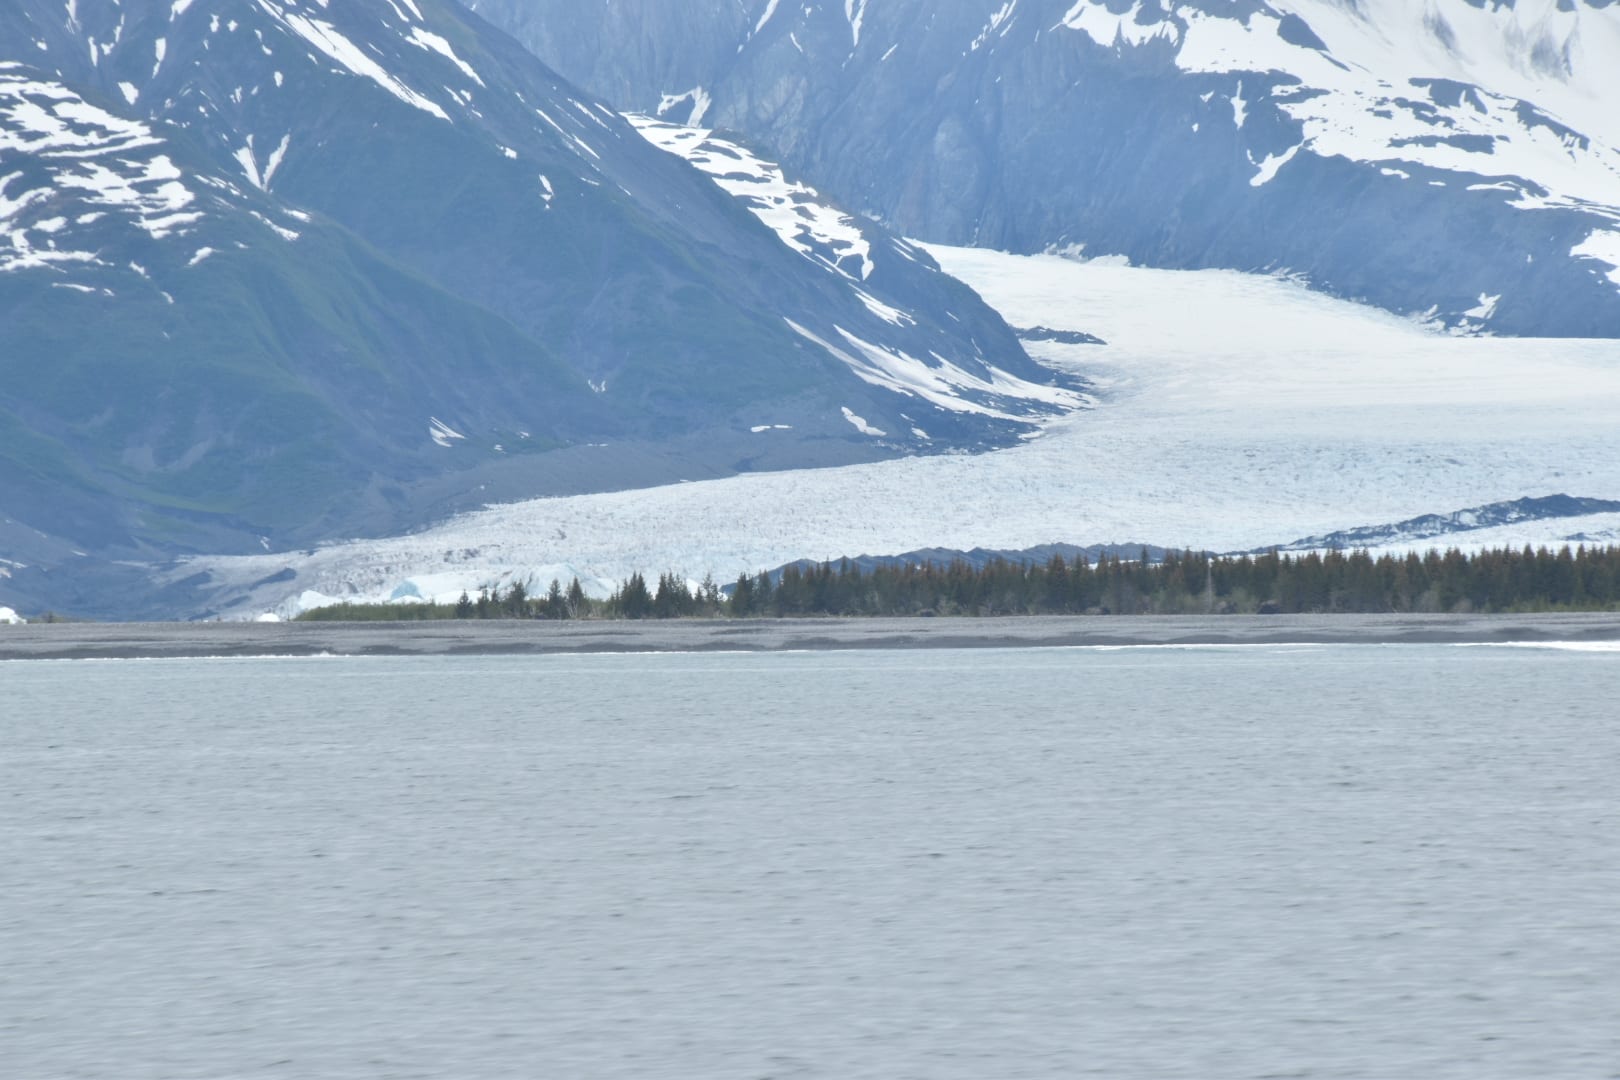 Bear Glacier off of Resurrection Bay in Alaska